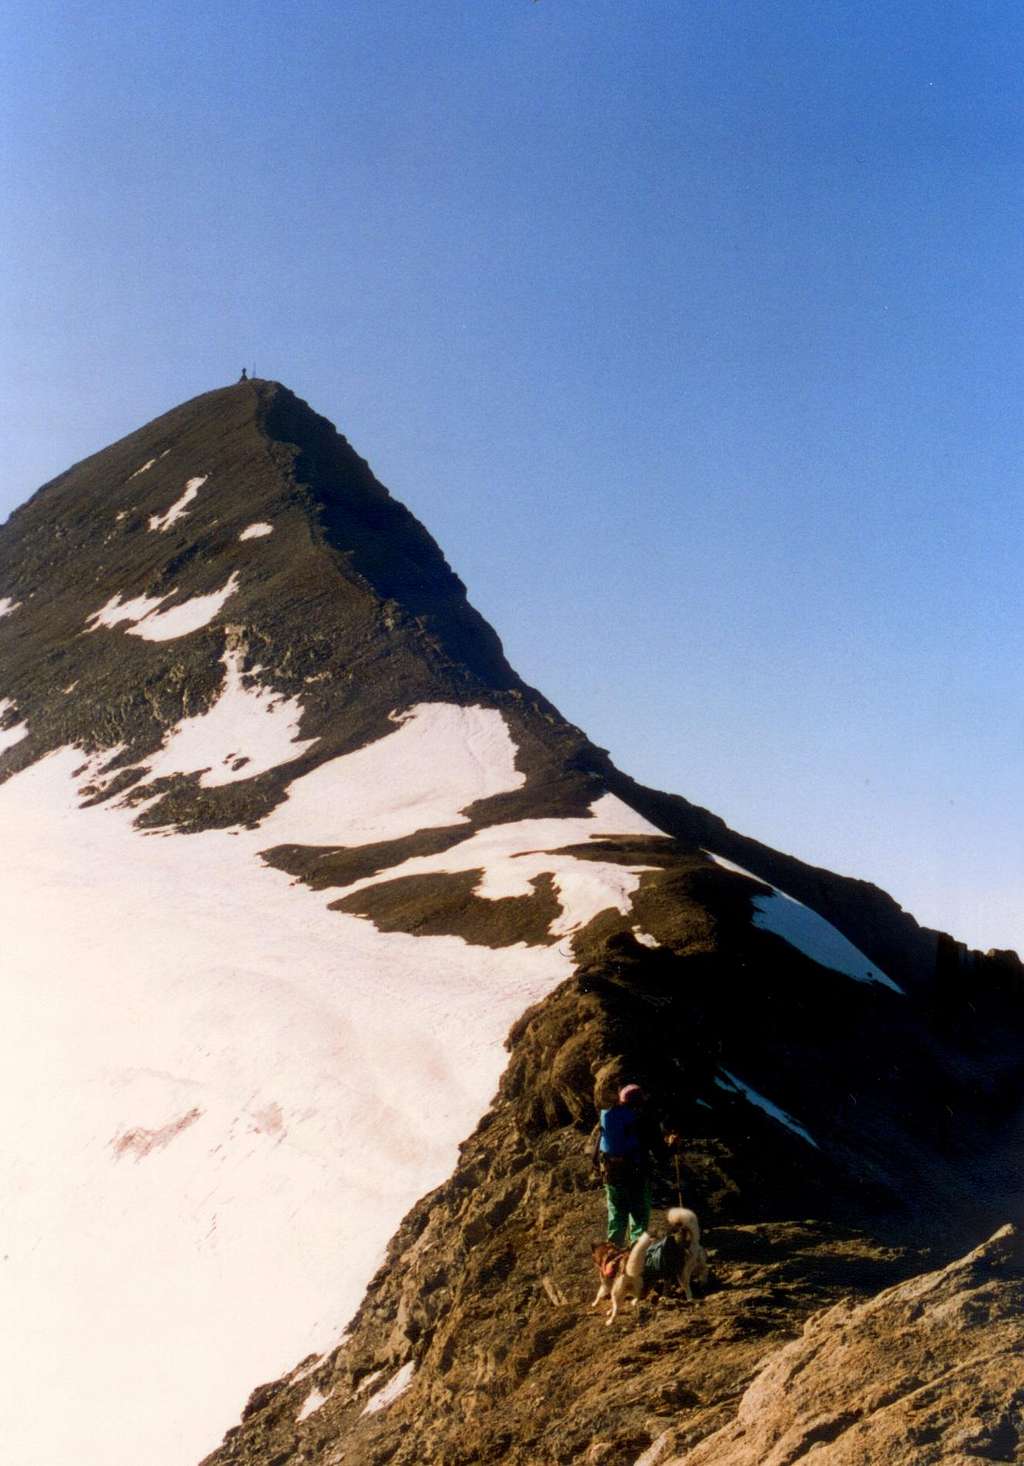 The NW ridge of Rocciamelone